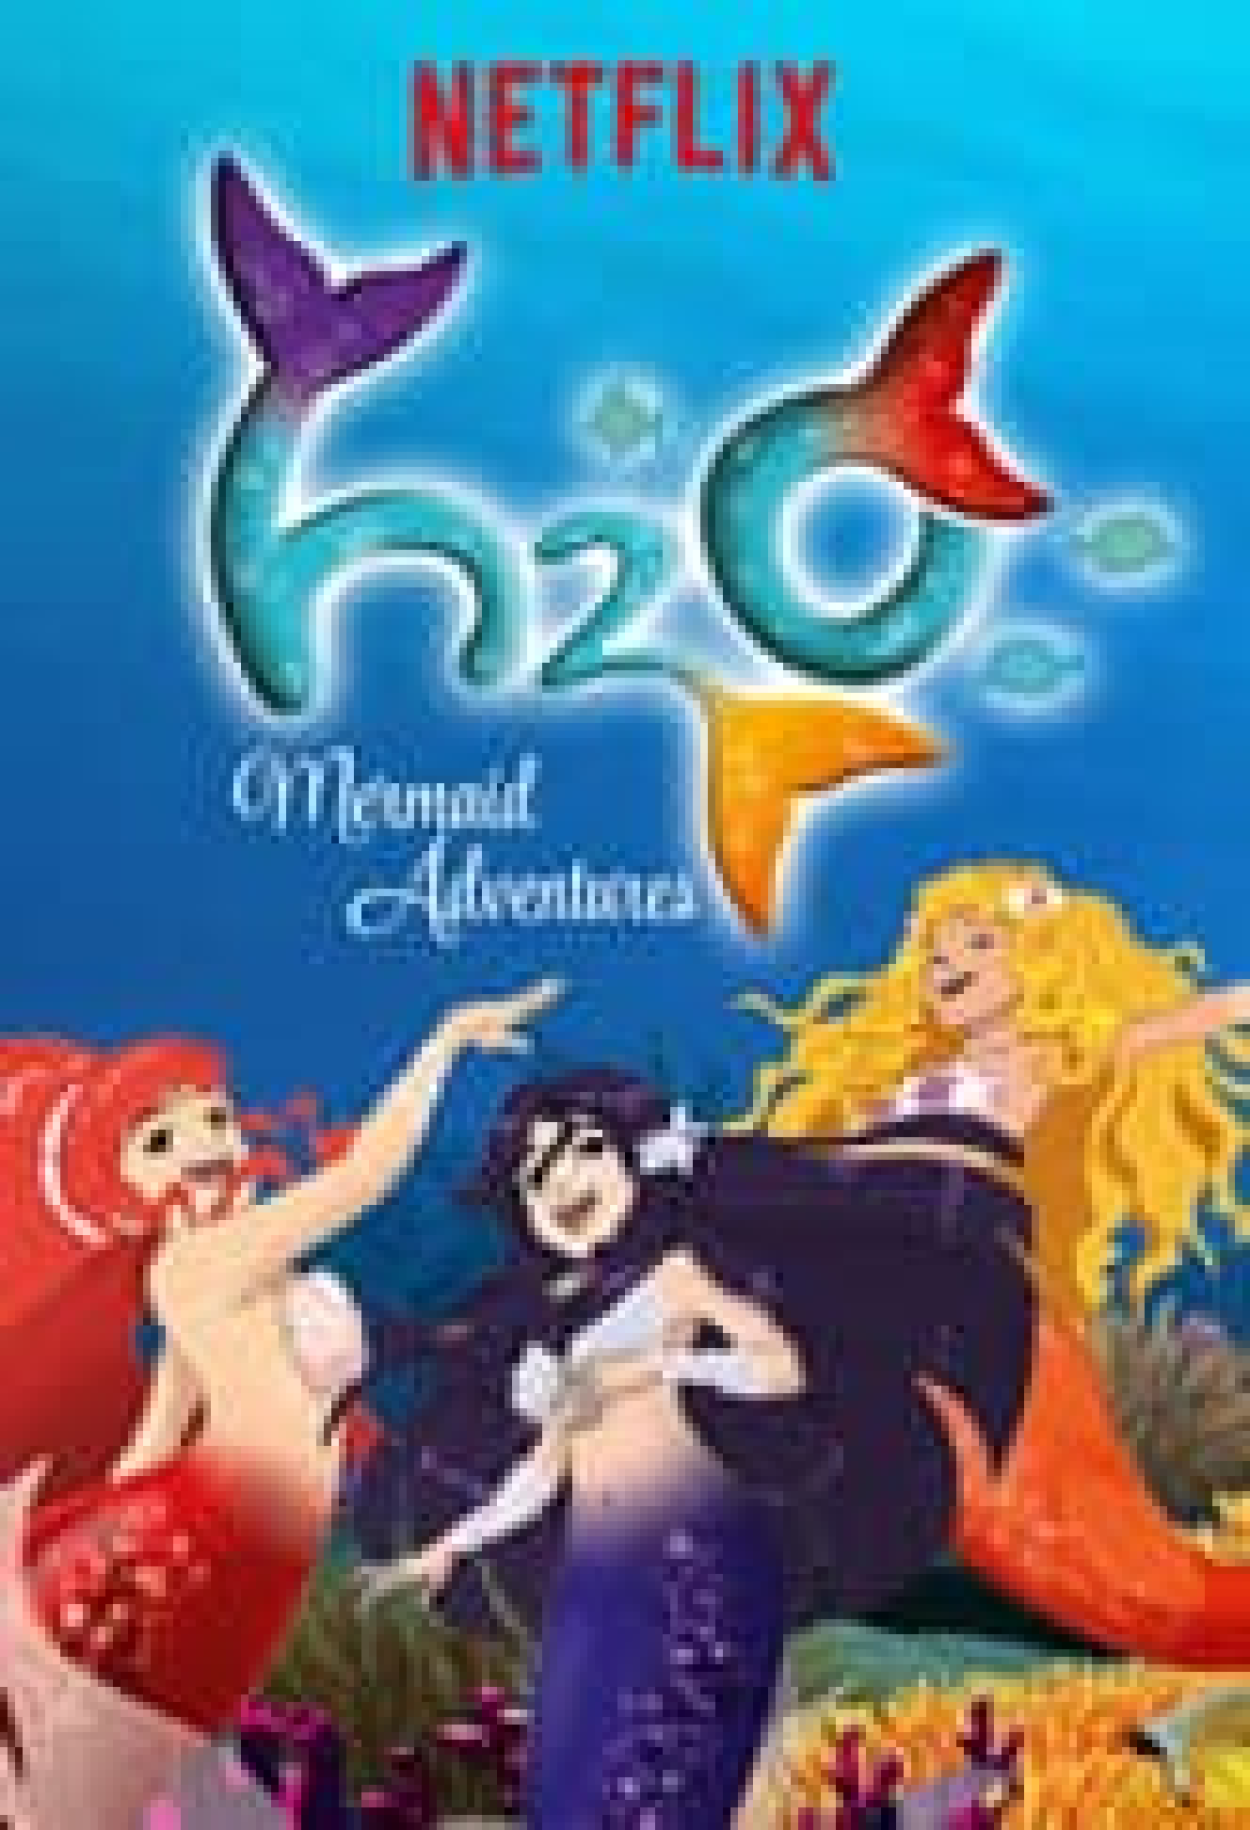 Mako Mermaids (Série), Sinopse, Trailers e Curiosidades - Cinema10